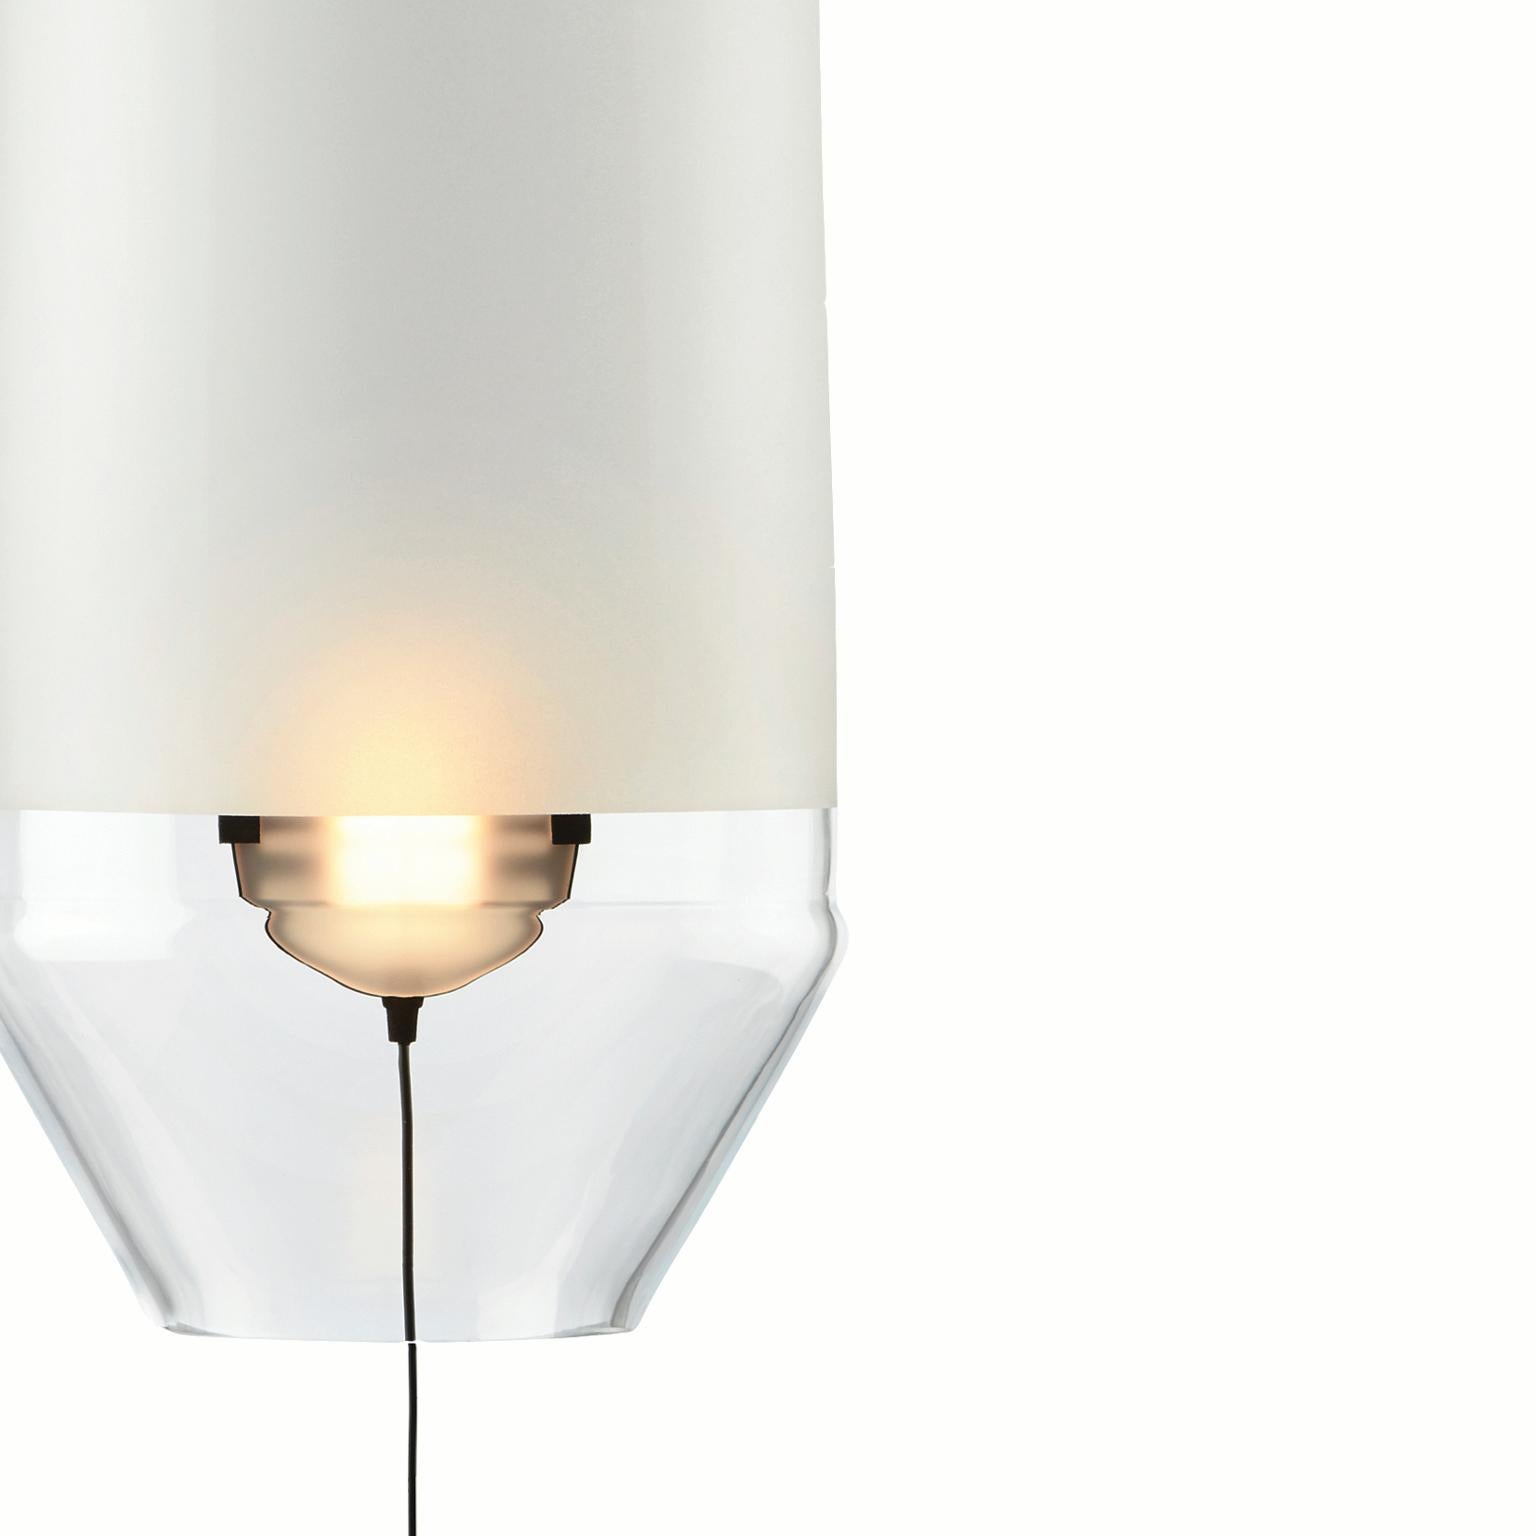 Notre lampe limpide taille S est une lampe suspendue, une lampe décorative, fabriquée en Europe.
La collection Limpid Lights, une série d'objets d'éclairage dont le mouvement est un élément clé de la conception.
En éloignant ou en rapprochant la